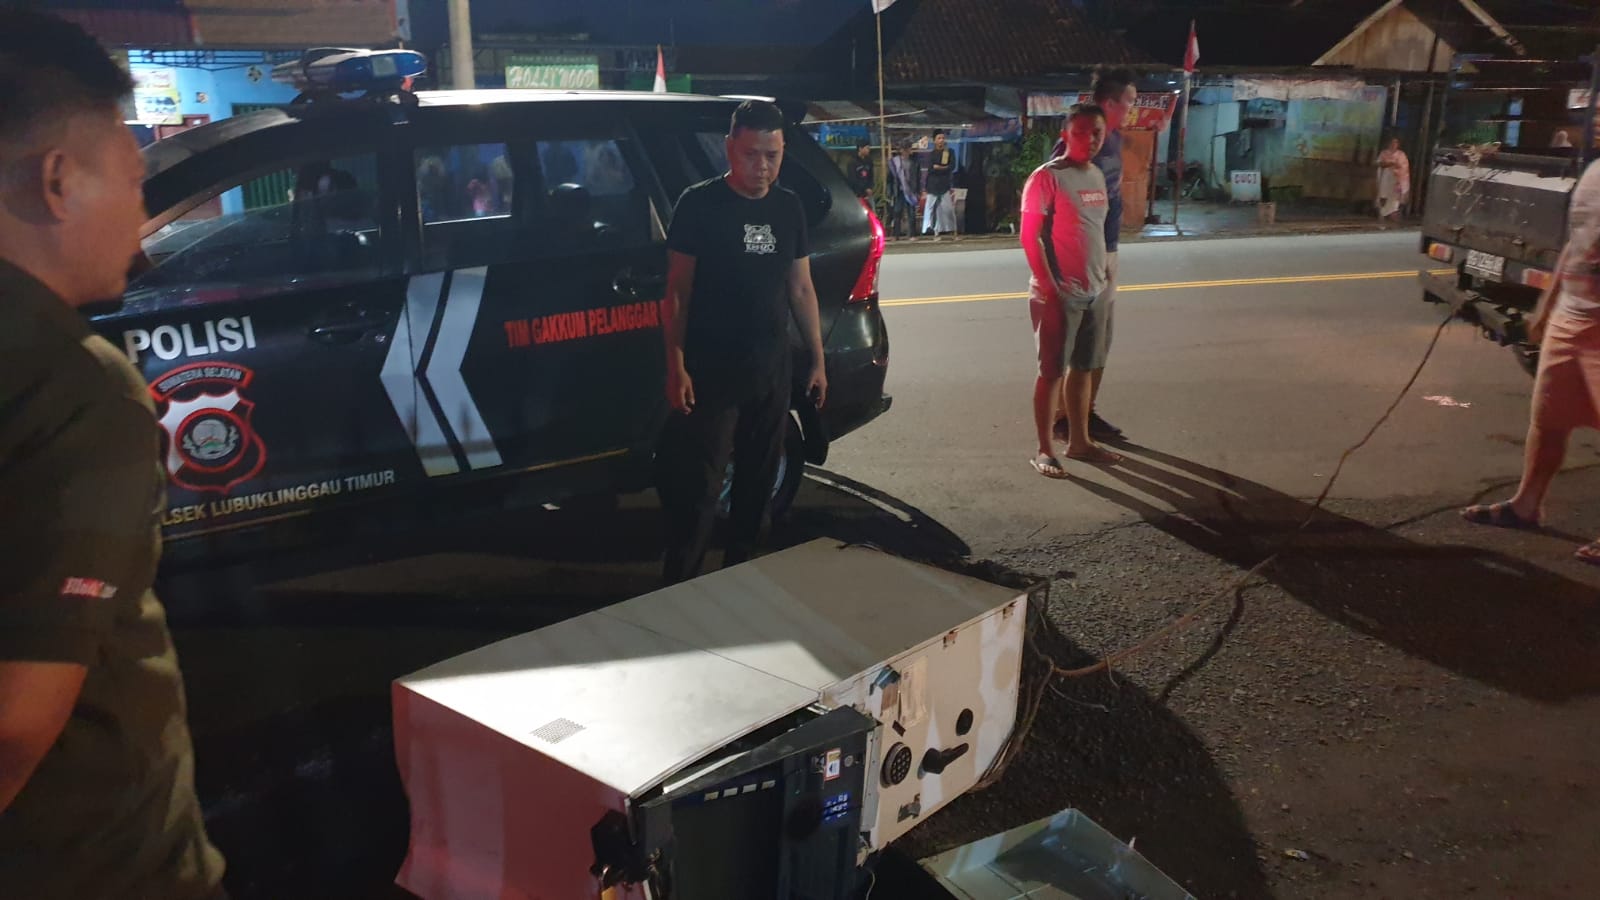 Gagal Bobol ATM,Pelaku Diburu Polisi